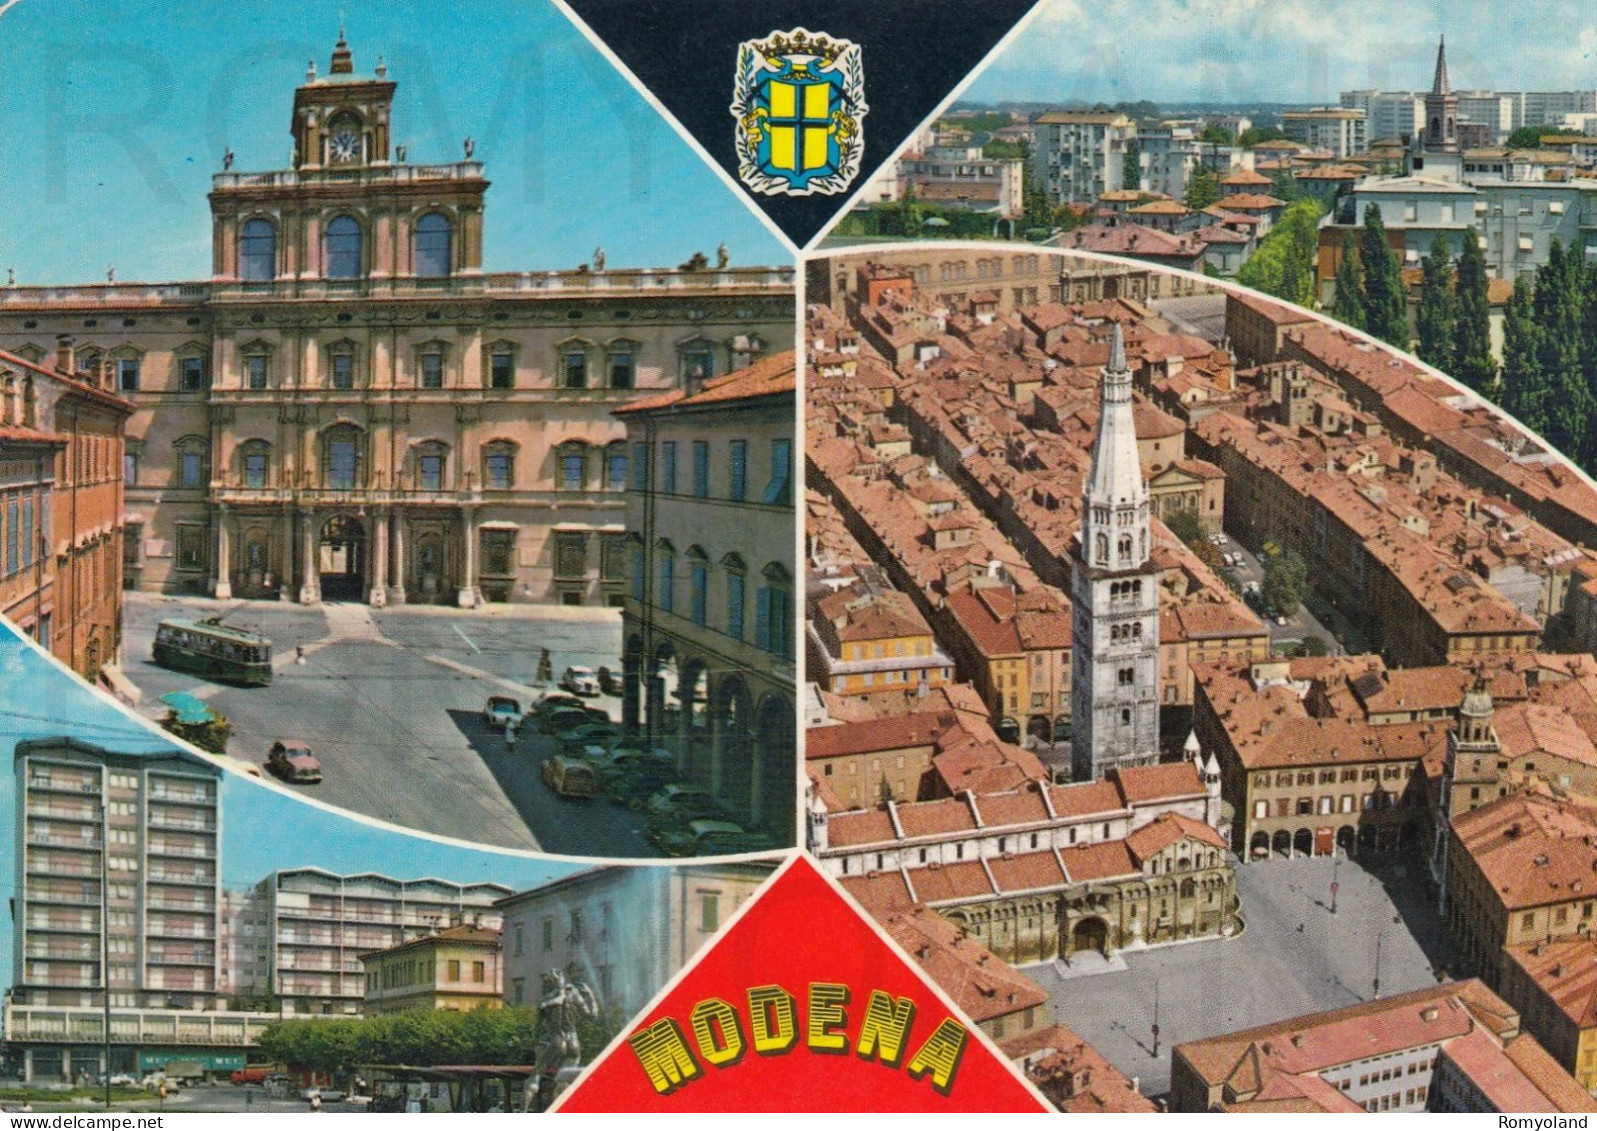 CARTOLINA  C14 MODENA,EMILIA ROMAGNA-STORIA,MEMORIA,CULTURA,RELIGIONE,IMPERO ROMANO,BELLA ITALIA,VIAGGIATA 1971 - Modena